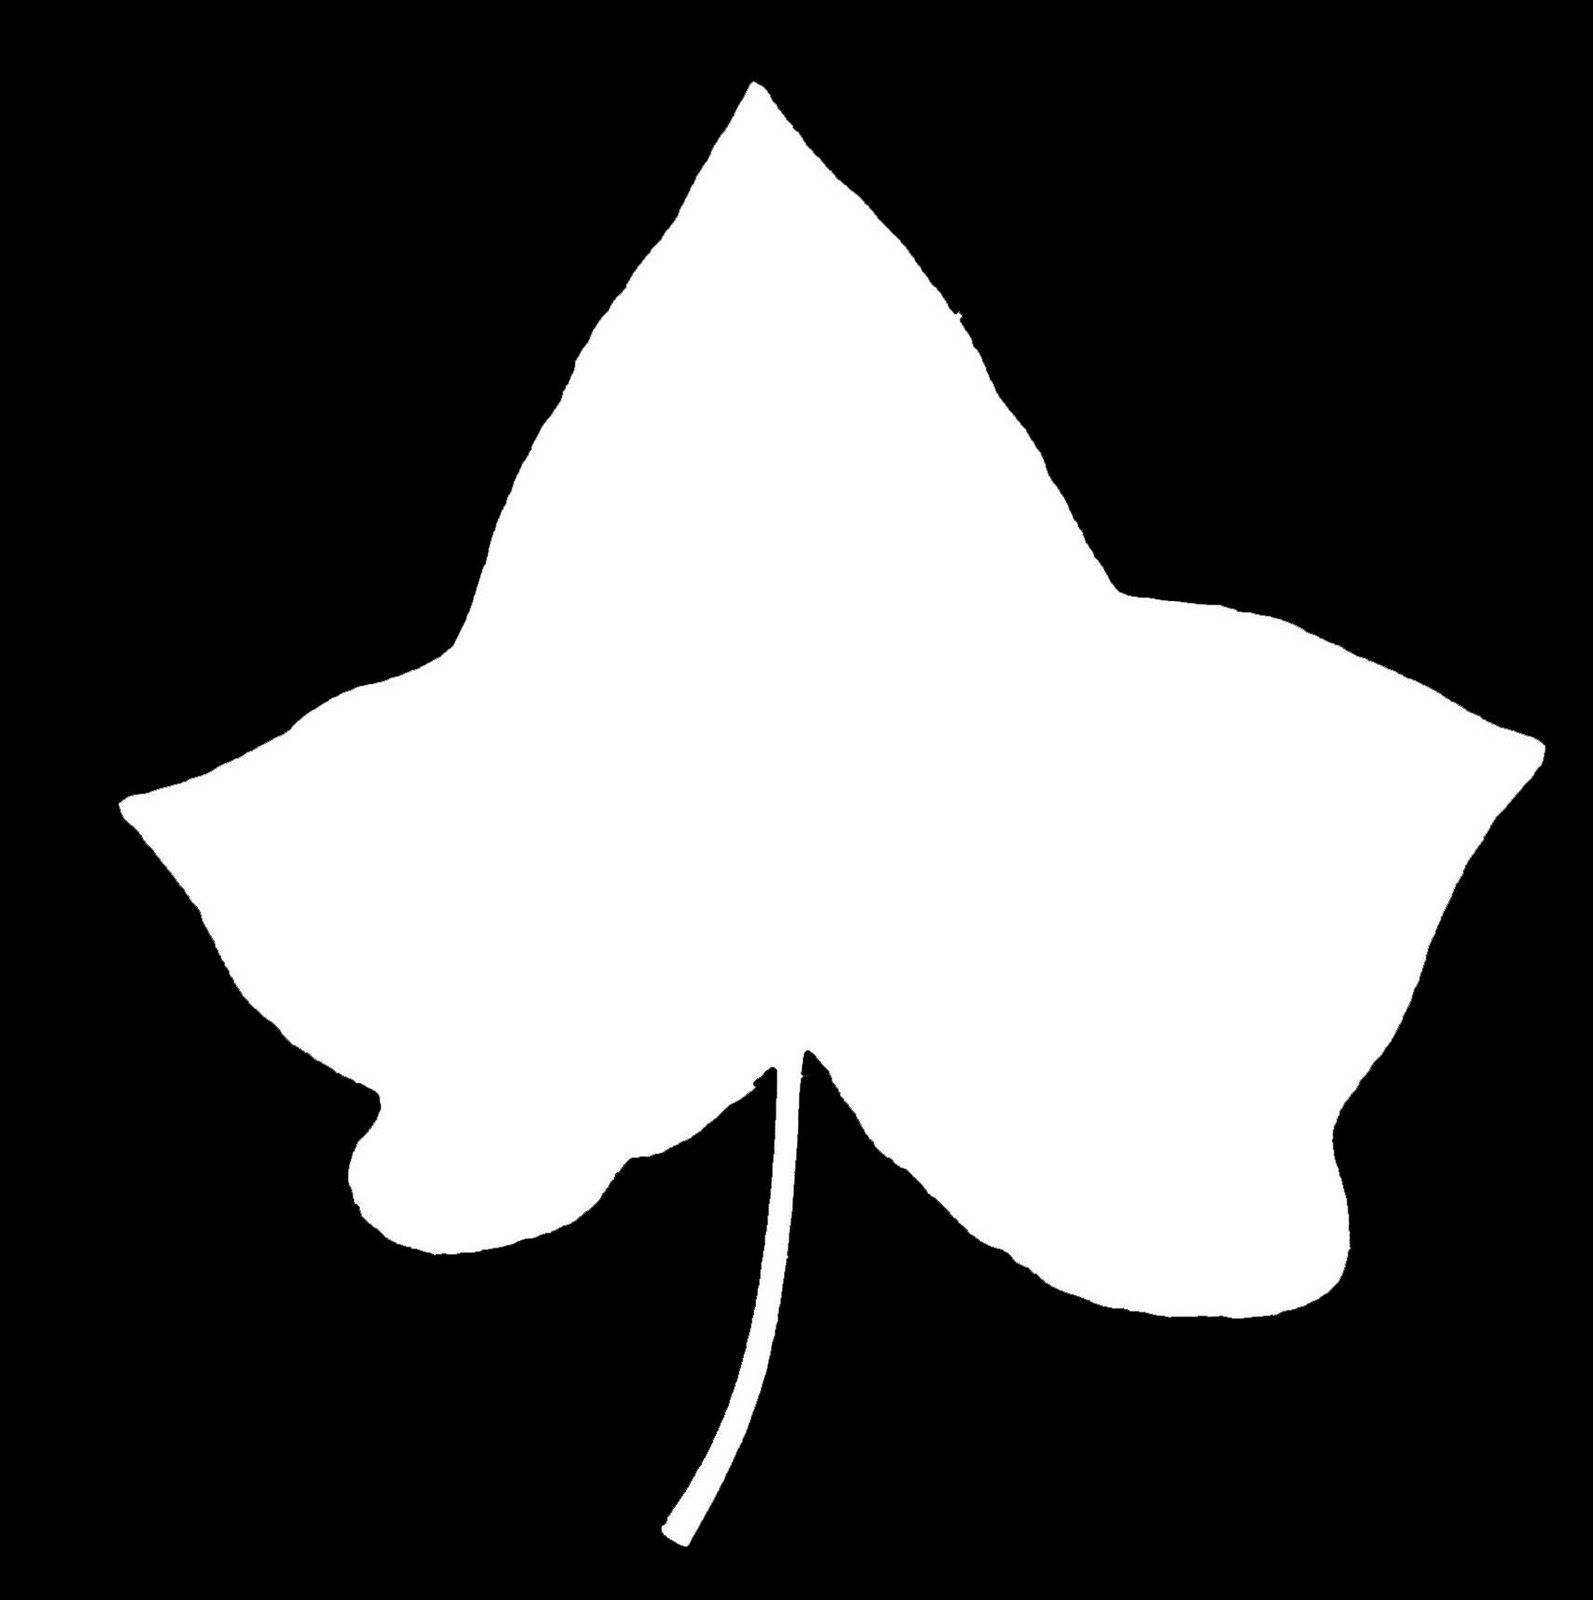 ivy-leaf-logo